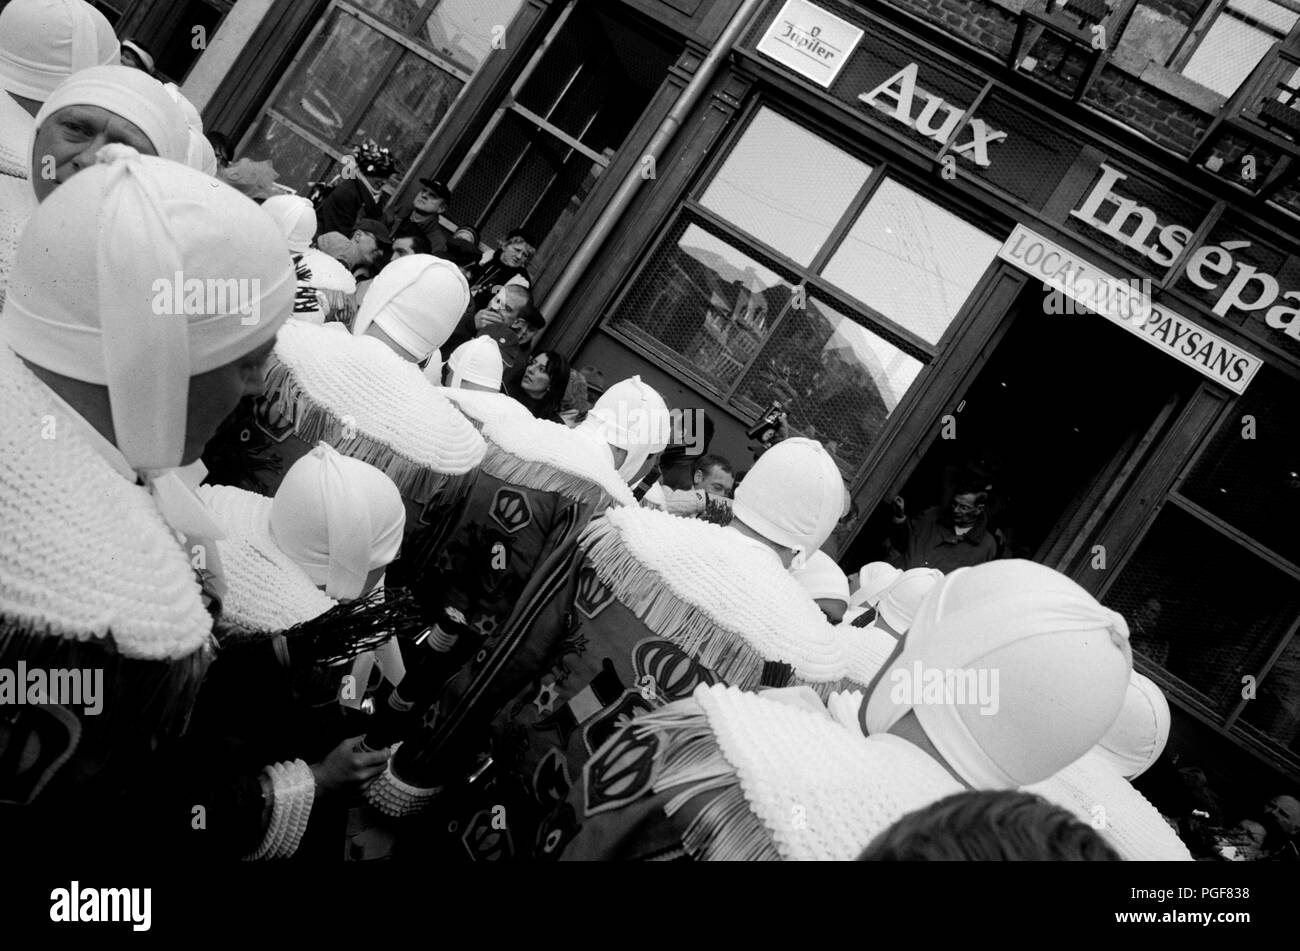 Le légendaire carnaval de Binche (Belgique, 08/02/2005) Banque D'Images